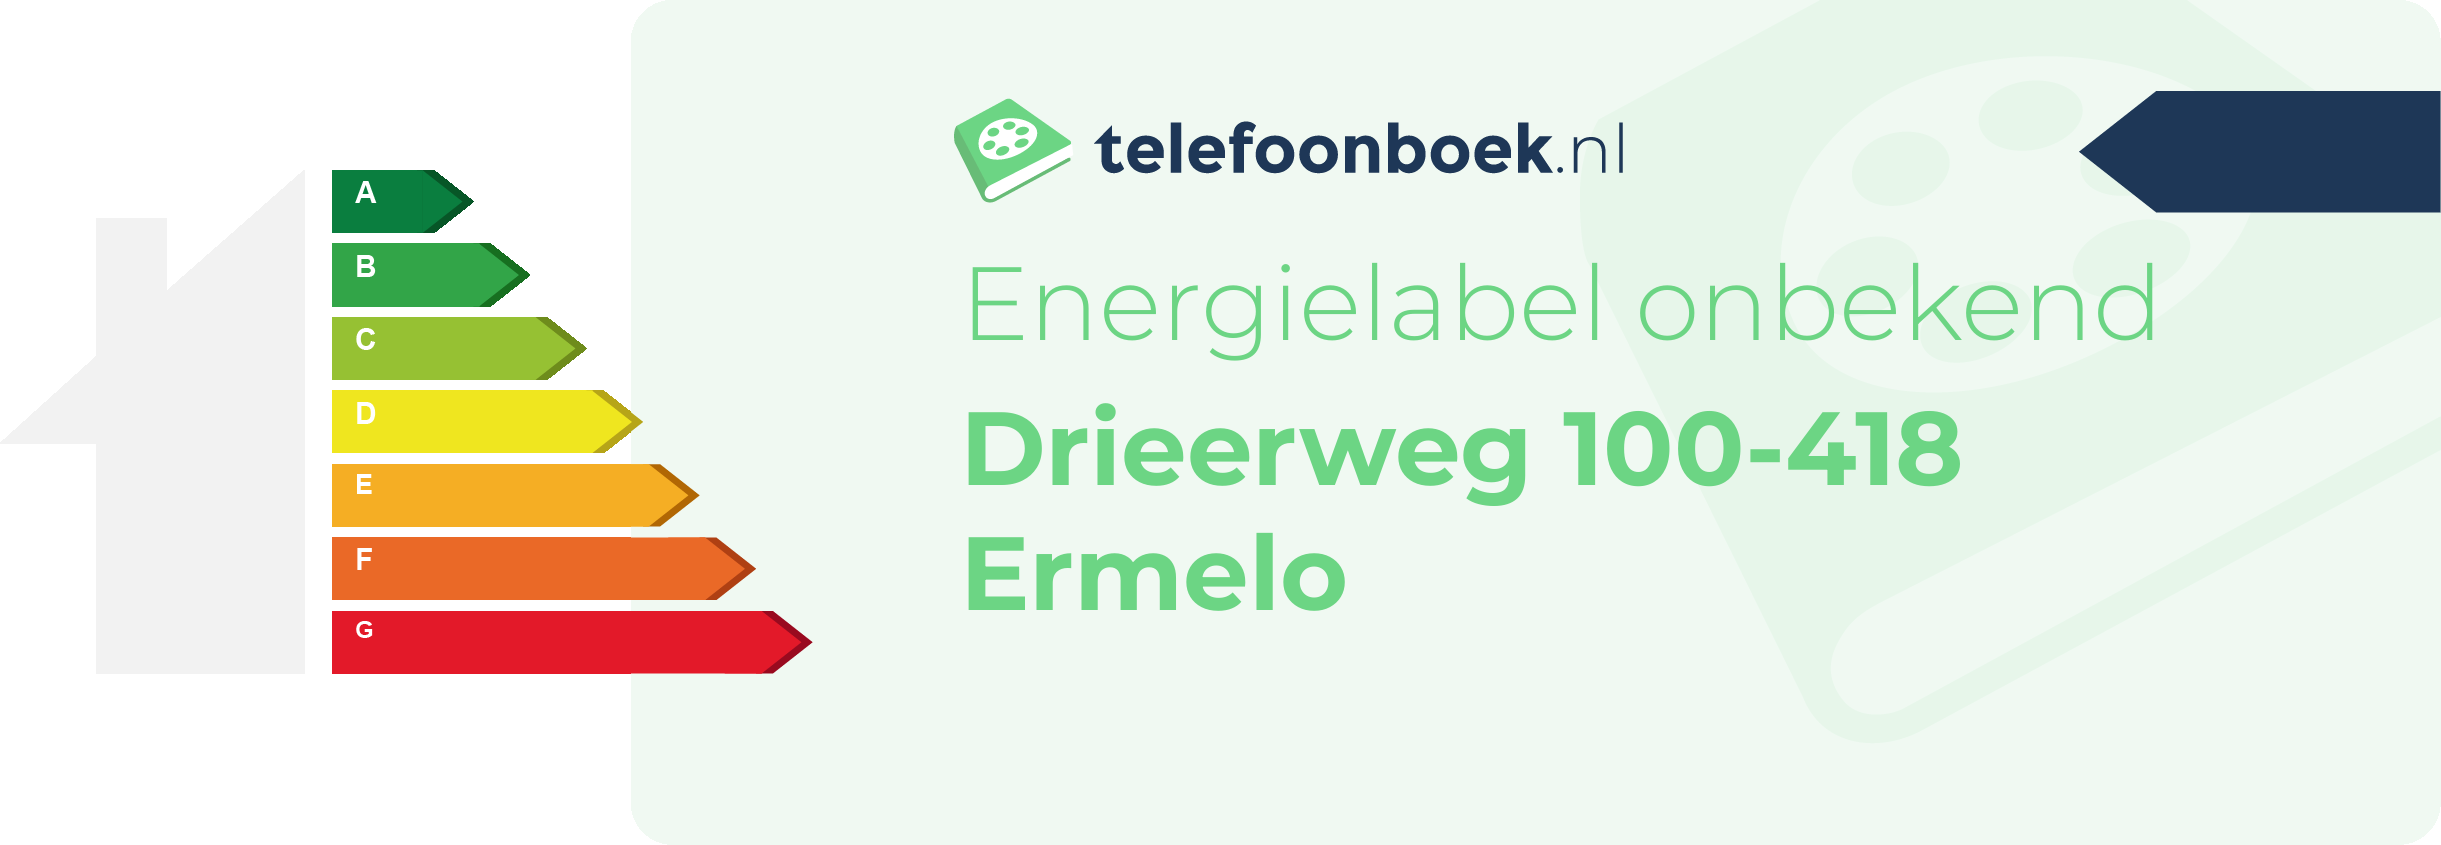 Energielabel Drieerweg 100-418 Ermelo